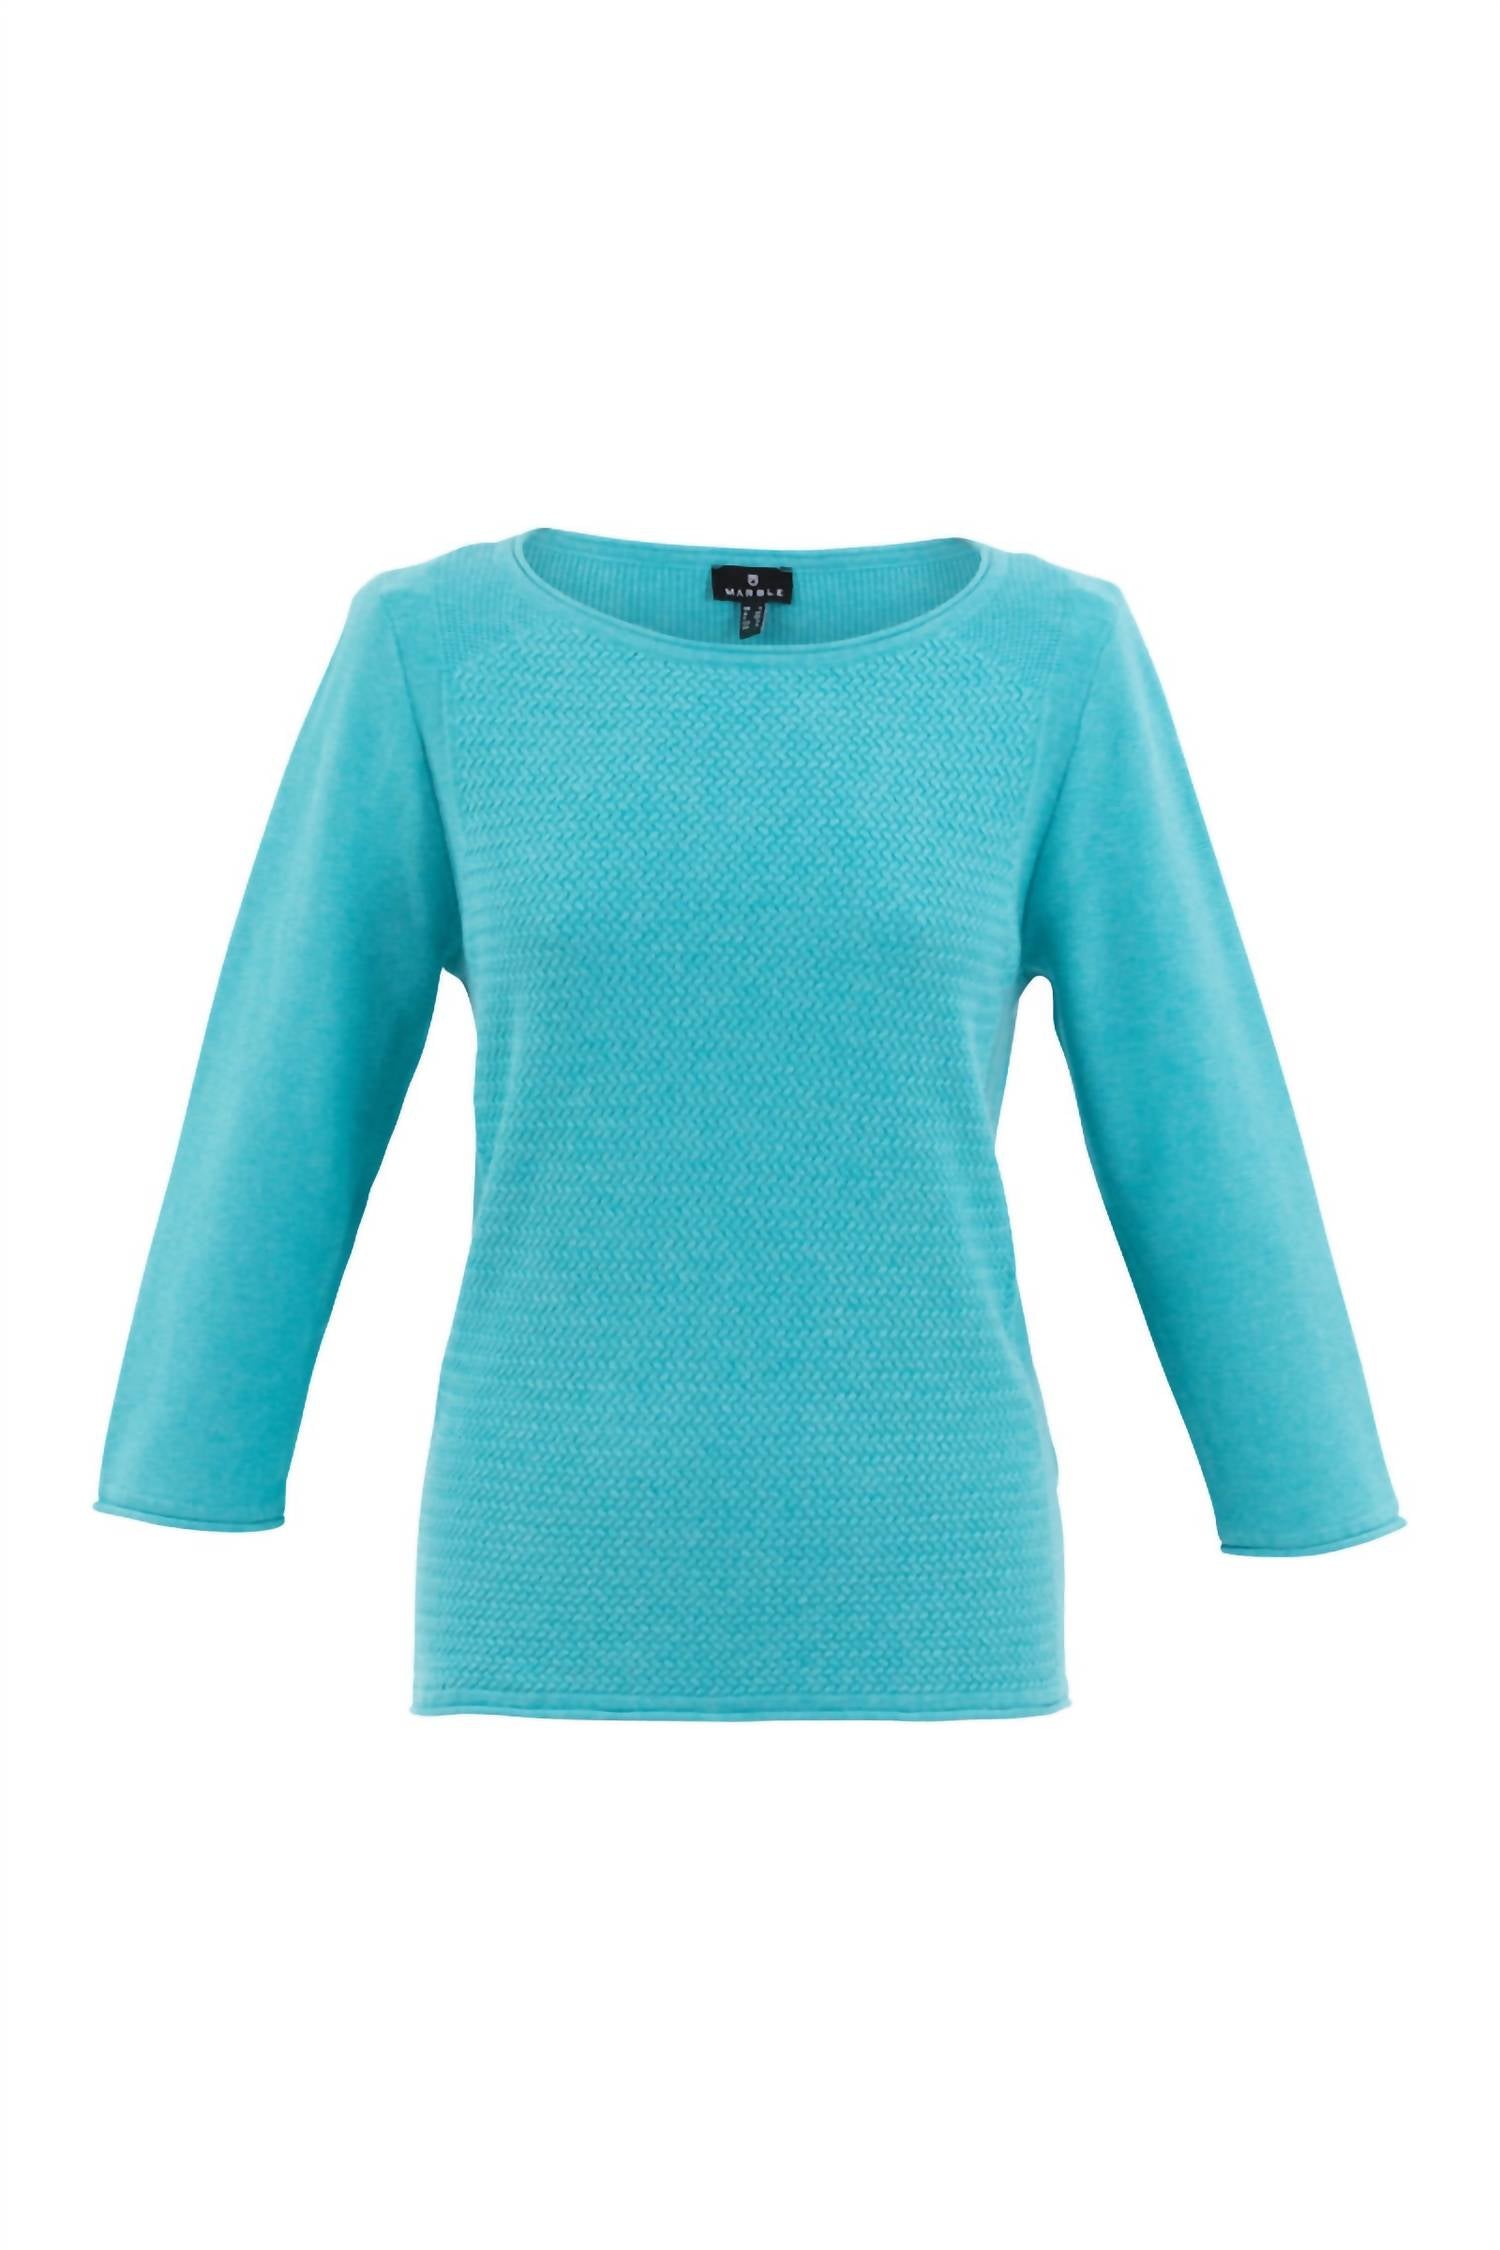 Marble Women's Patterned Knit Sweater In Blue